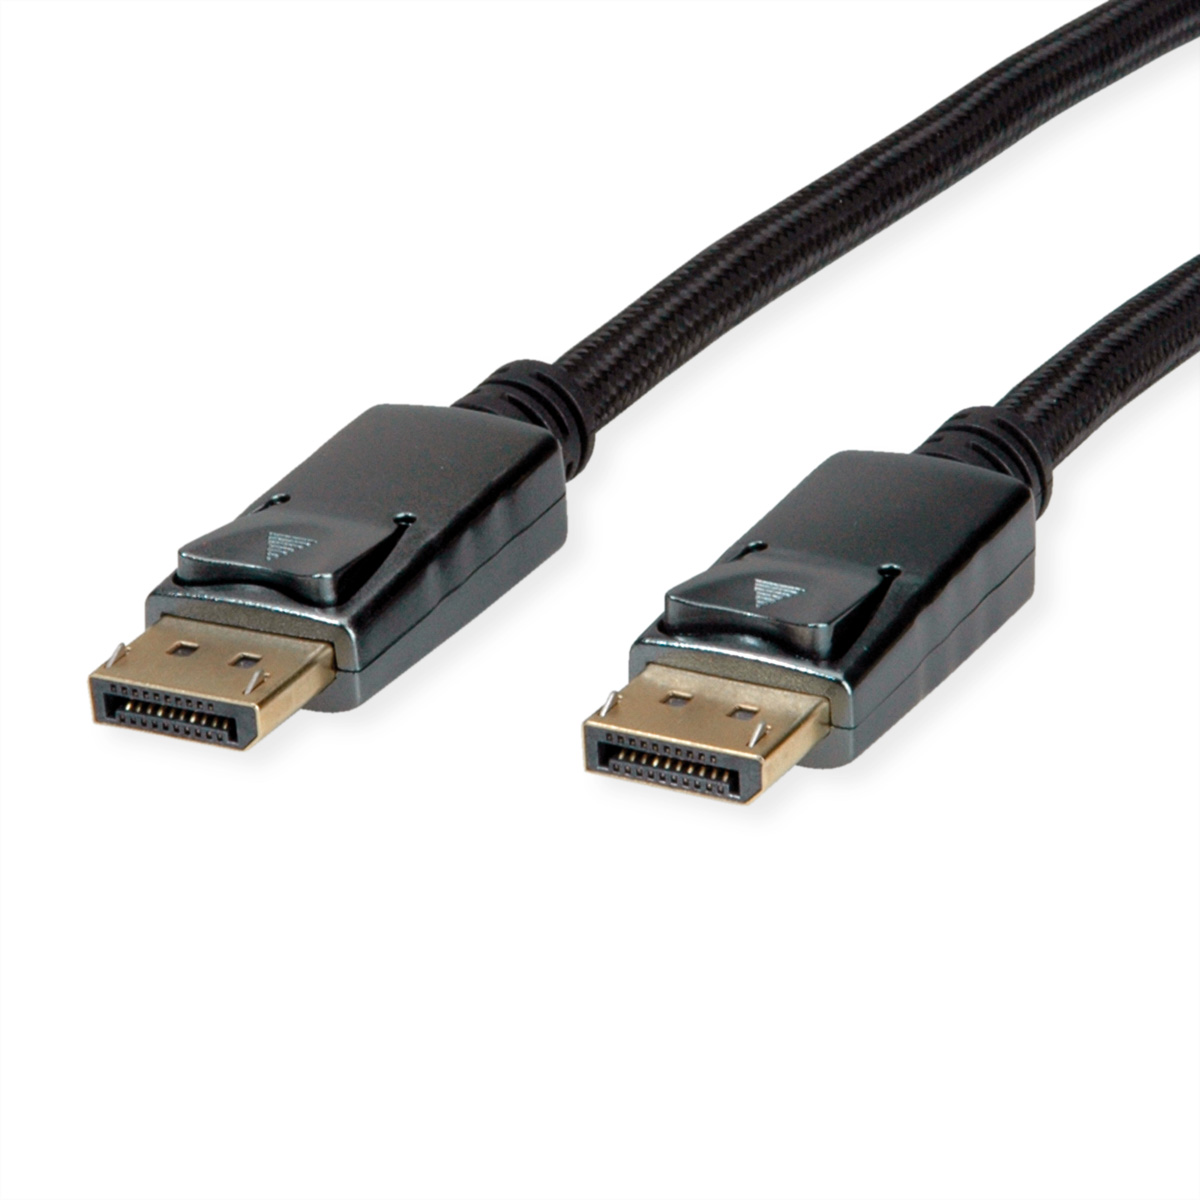 ROLINE DisplayPort Kabel, v1.4, DP ST - ST, schwarz / silber, 3 m